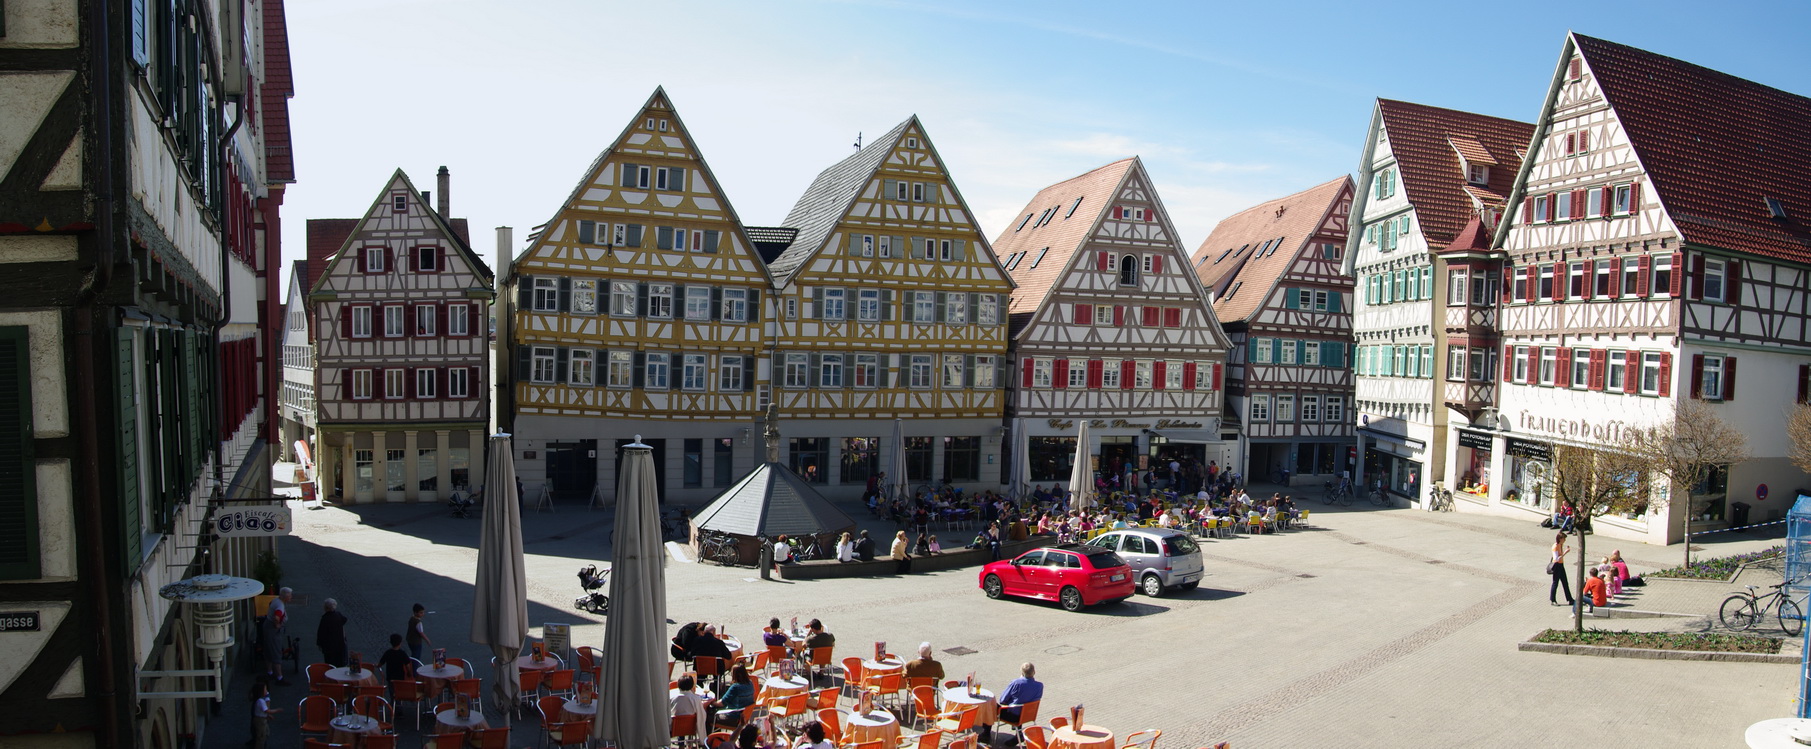 Mercado de la ciudad alemana de Herrenberg, que tiene un gemelo digital para optimizar la planificación urbana. Bgabel.